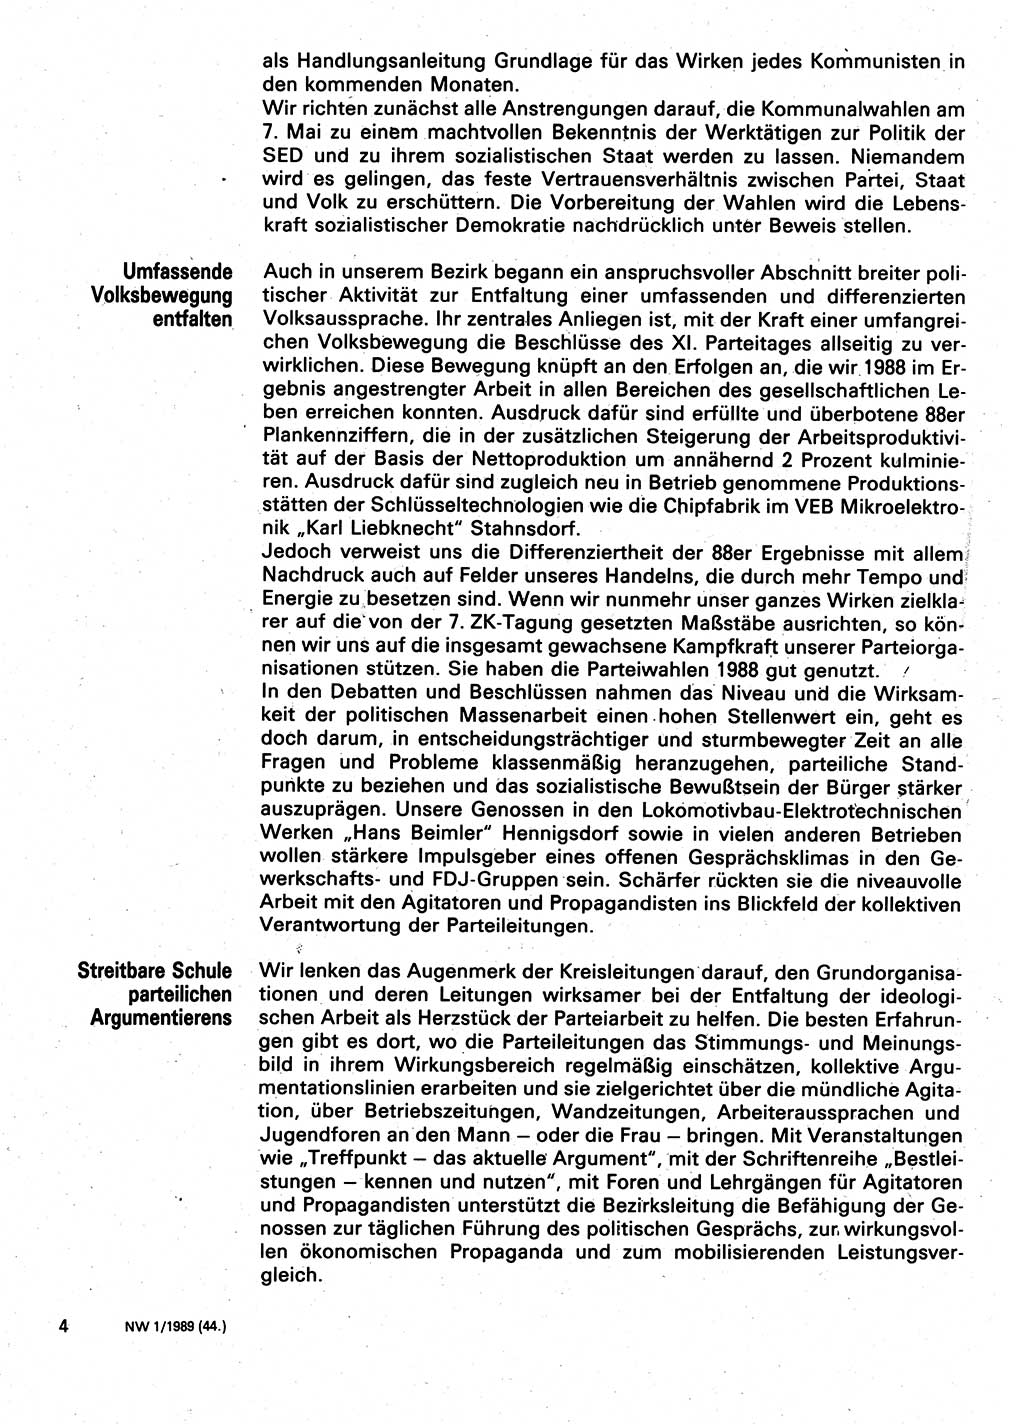 Neuer Weg (NW), Organ des Zentralkomitees (ZK) der SED (Sozialistische Einheitspartei Deutschlands) für Fragen des Parteilebens, 44. Jahrgang [Deutsche Demokratische Republik (DDR)] 1989, Seite 4 (NW ZK SED DDR 1989, S. 4)